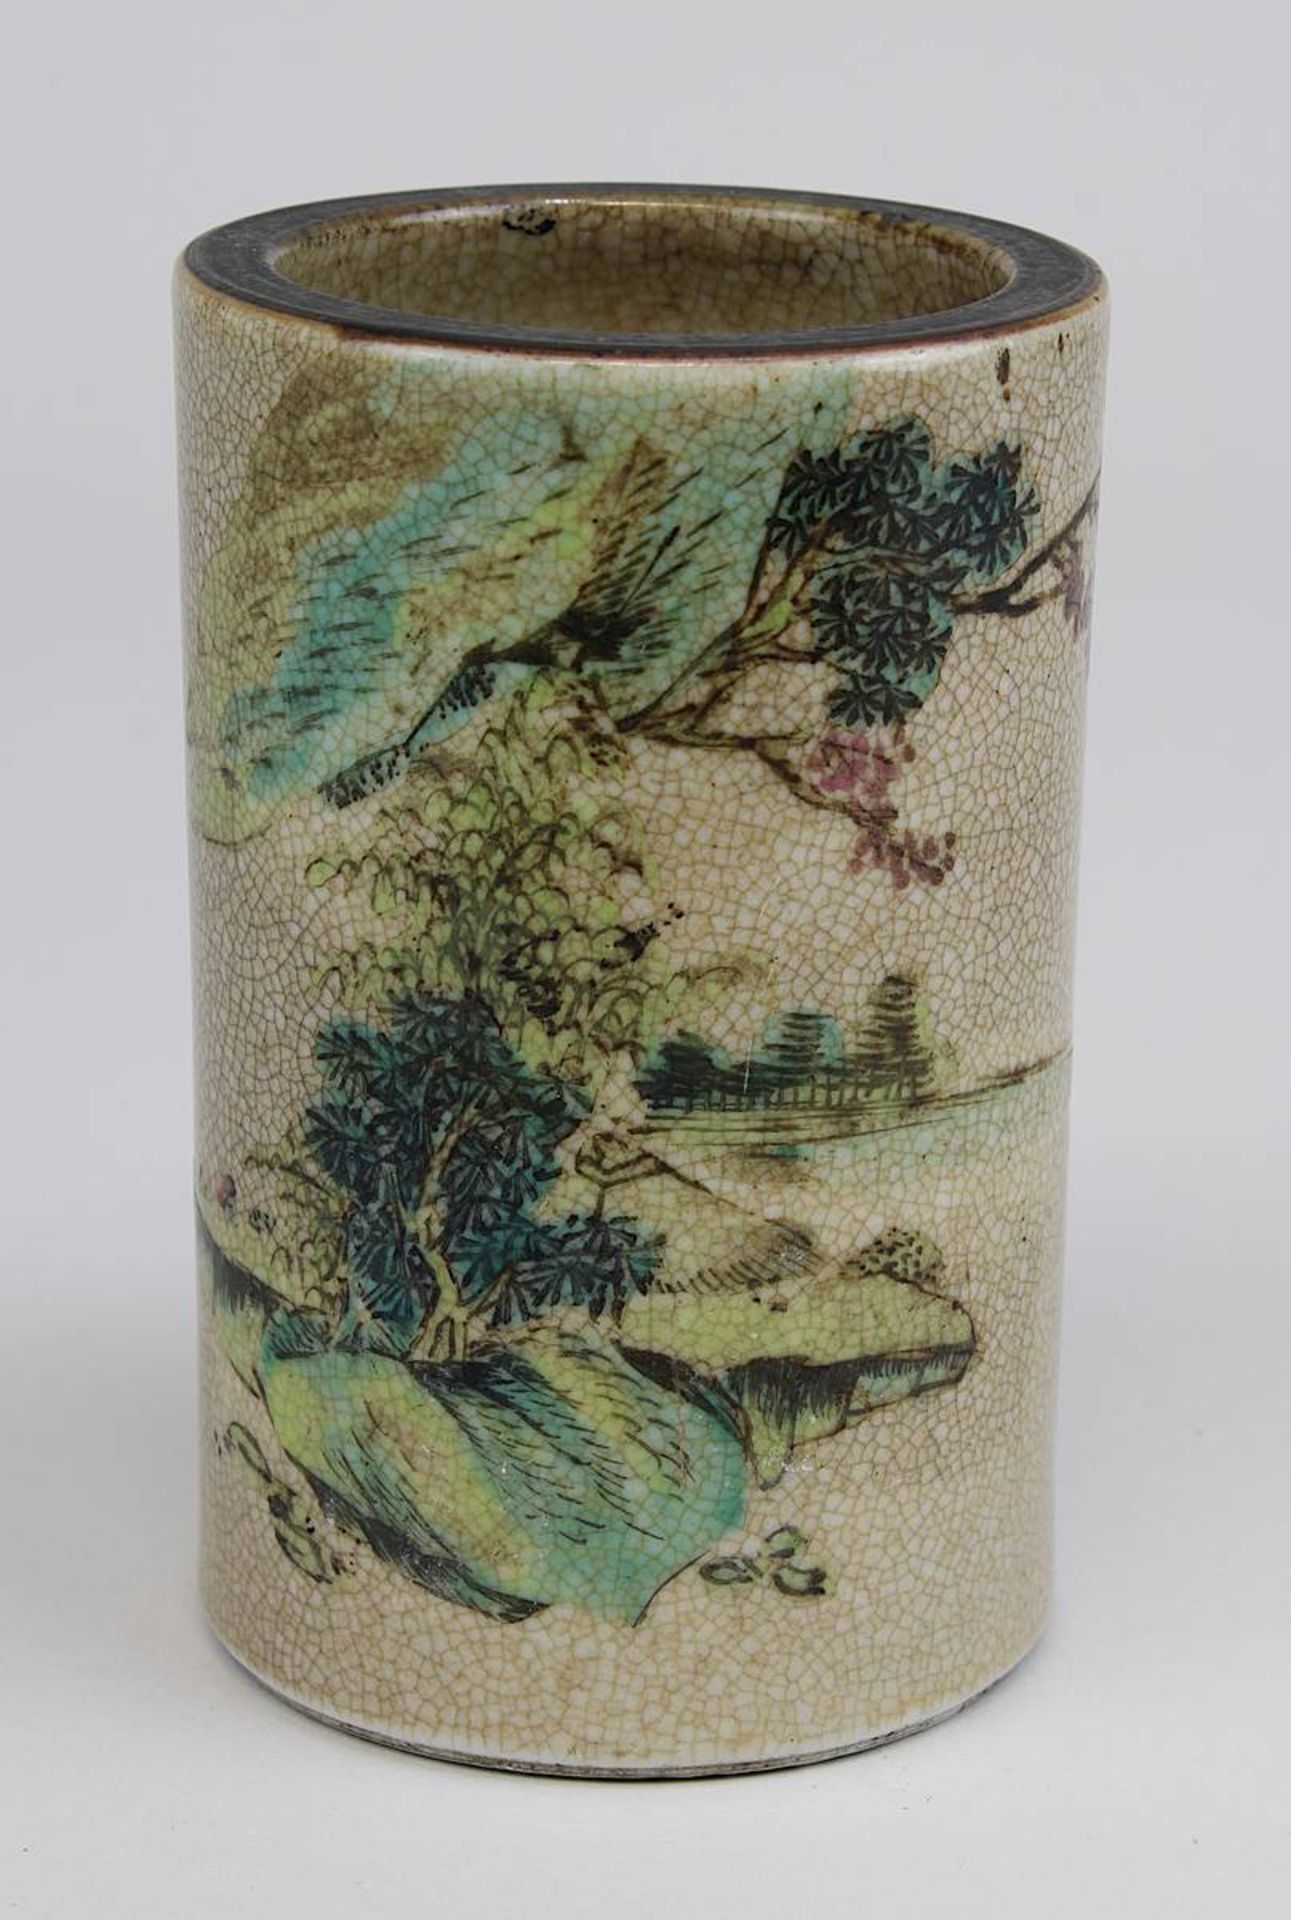 Kleine Vase oder Pinselbecher, Nanking-Porzellan, China um 1920-20, Porzellan mit Craquelure-Glasur,